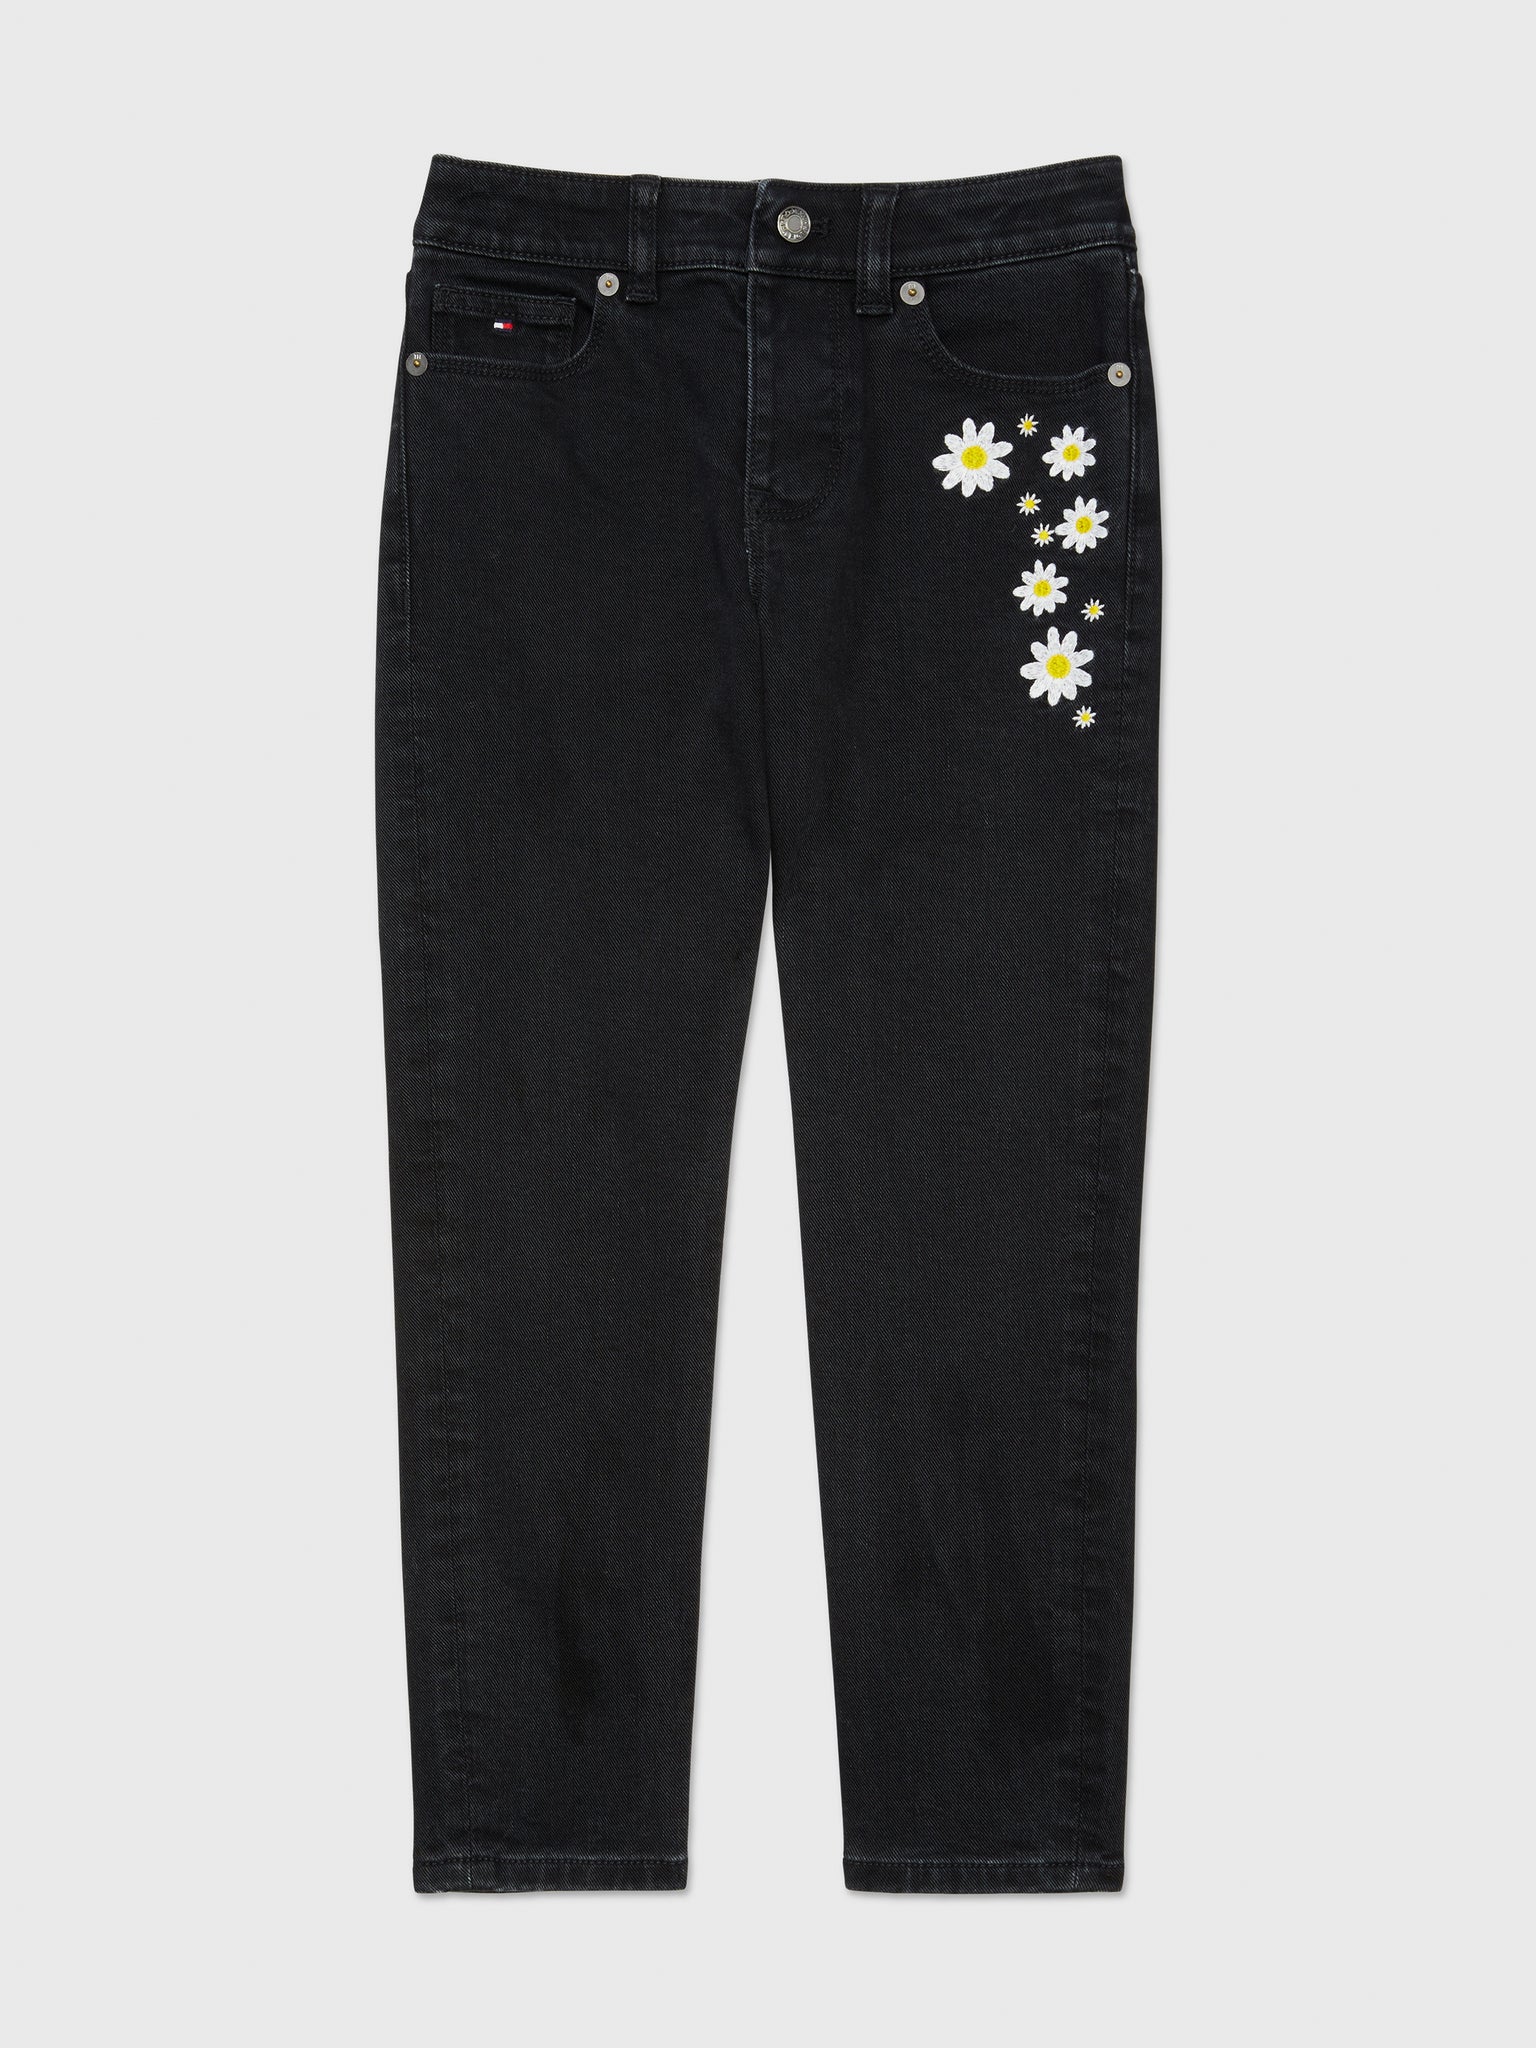 Tapered Flower Jeans (Girls) - Black Denim